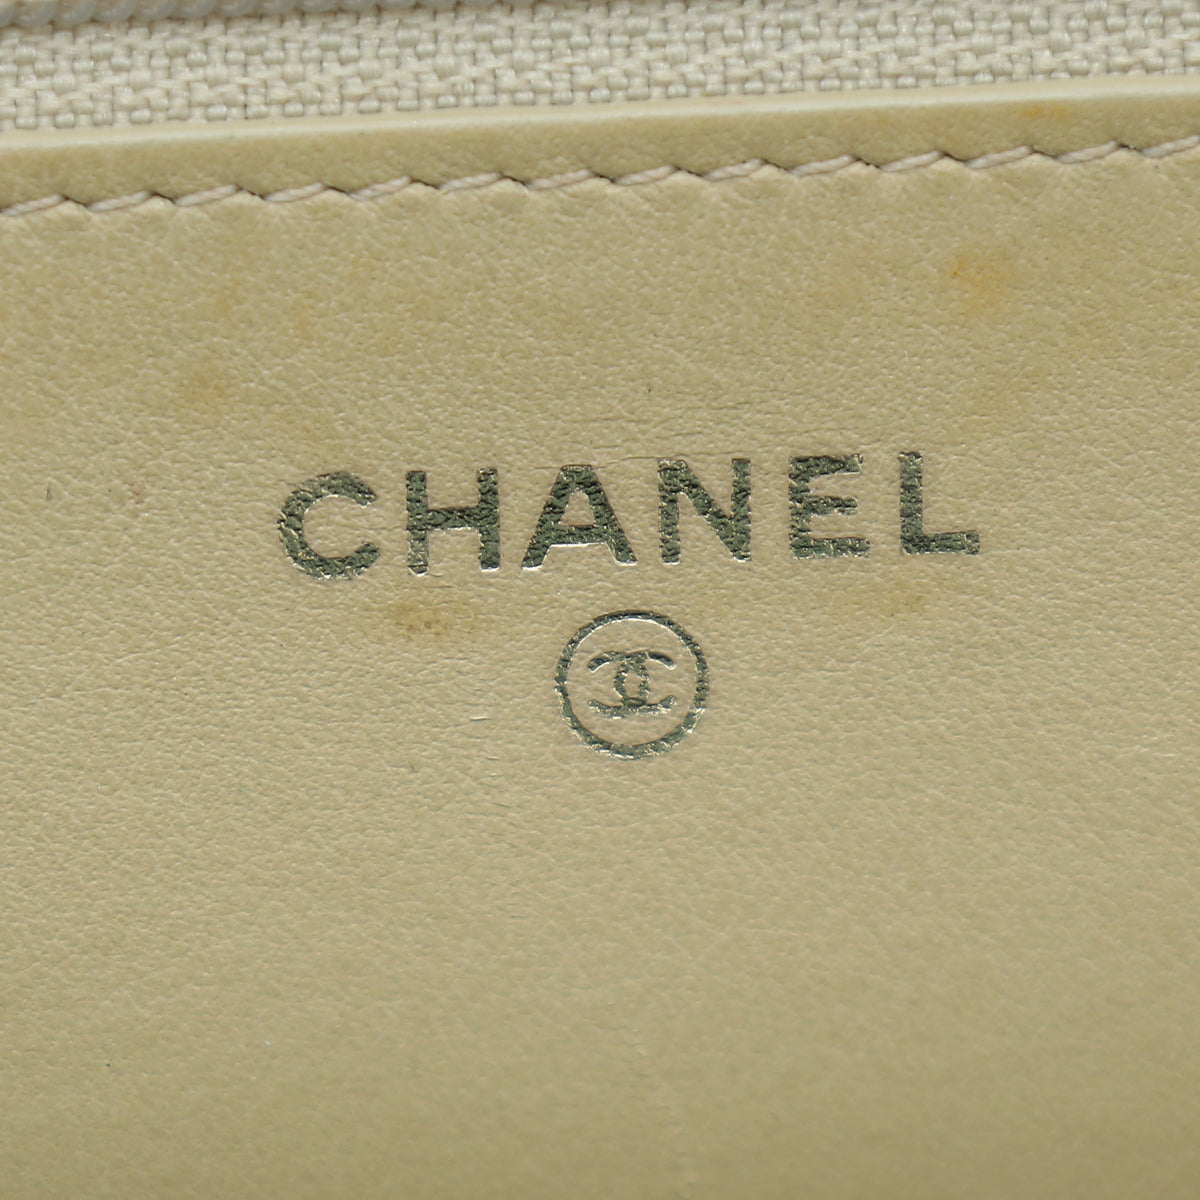 Chanel Metallic Golden Bronze Python Boy Wallet on Chain